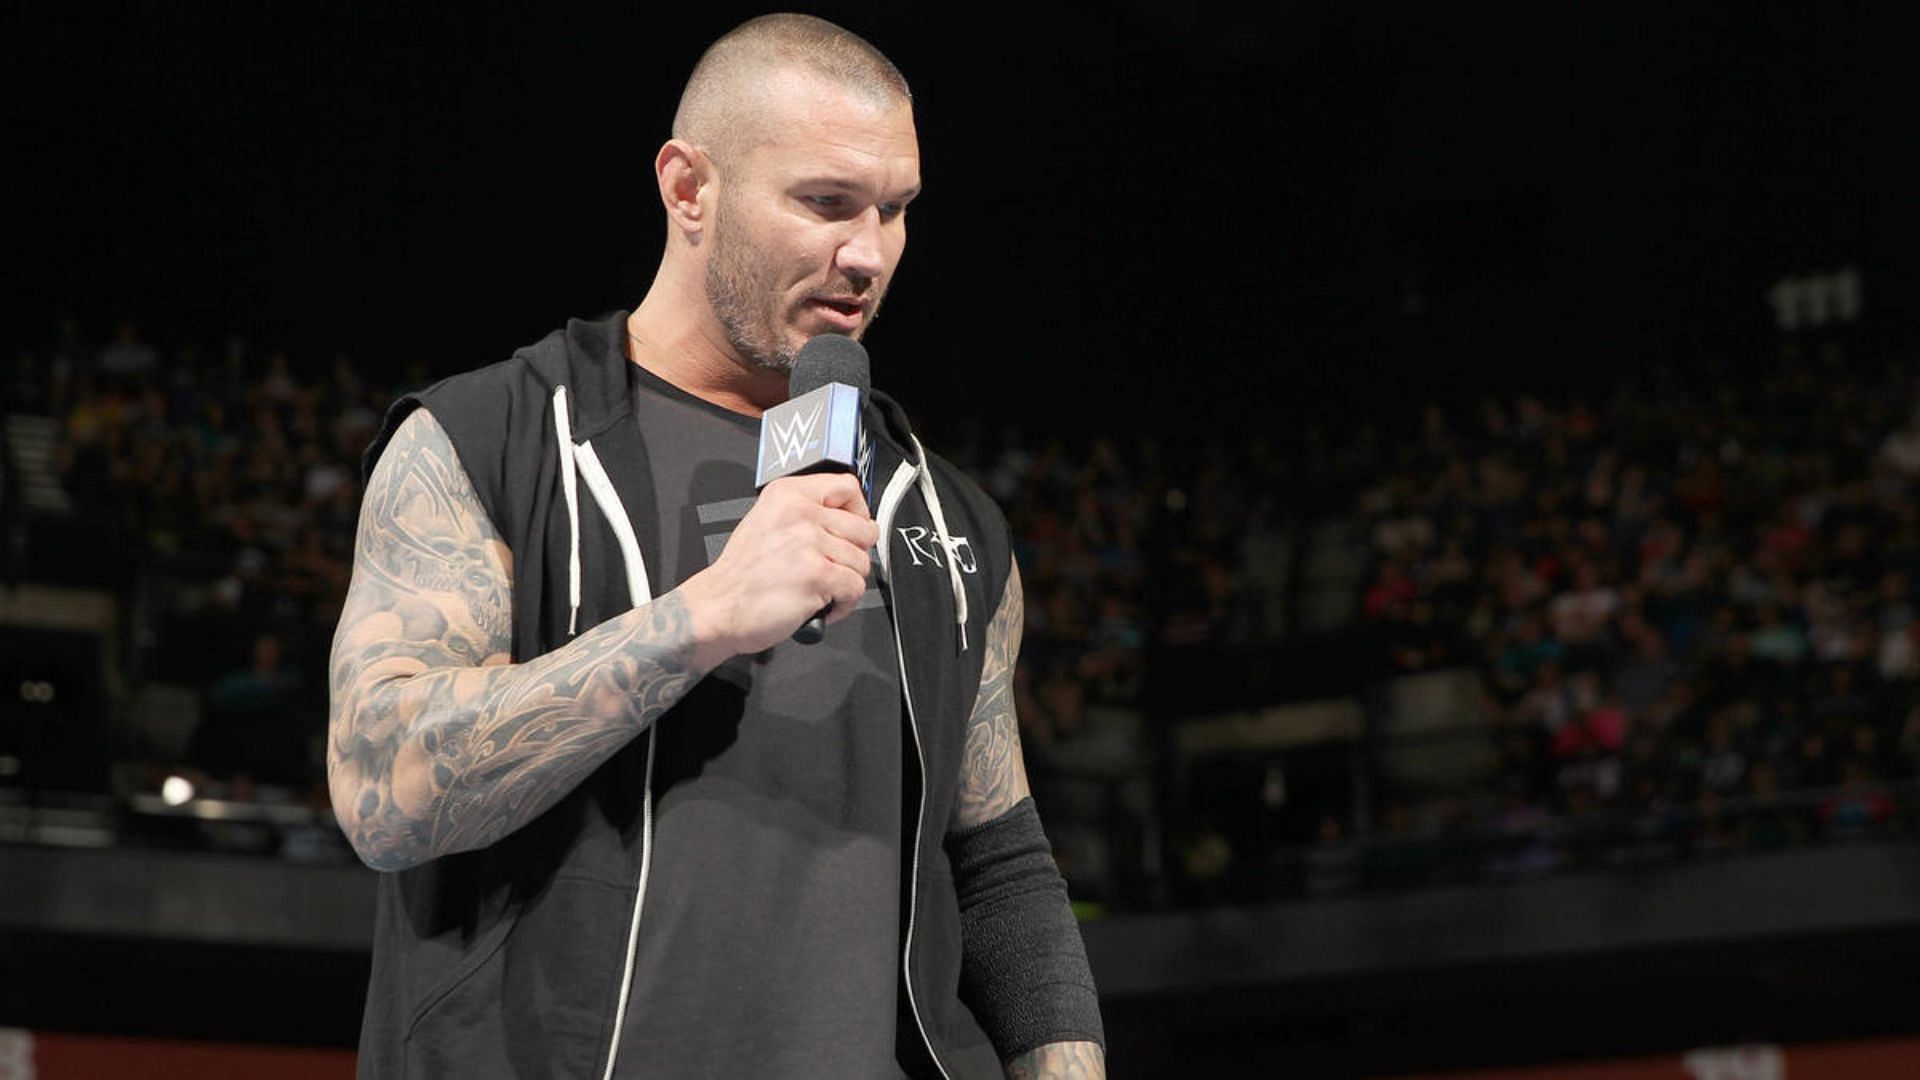 Randy Orton was last seen in WWE in May 2022